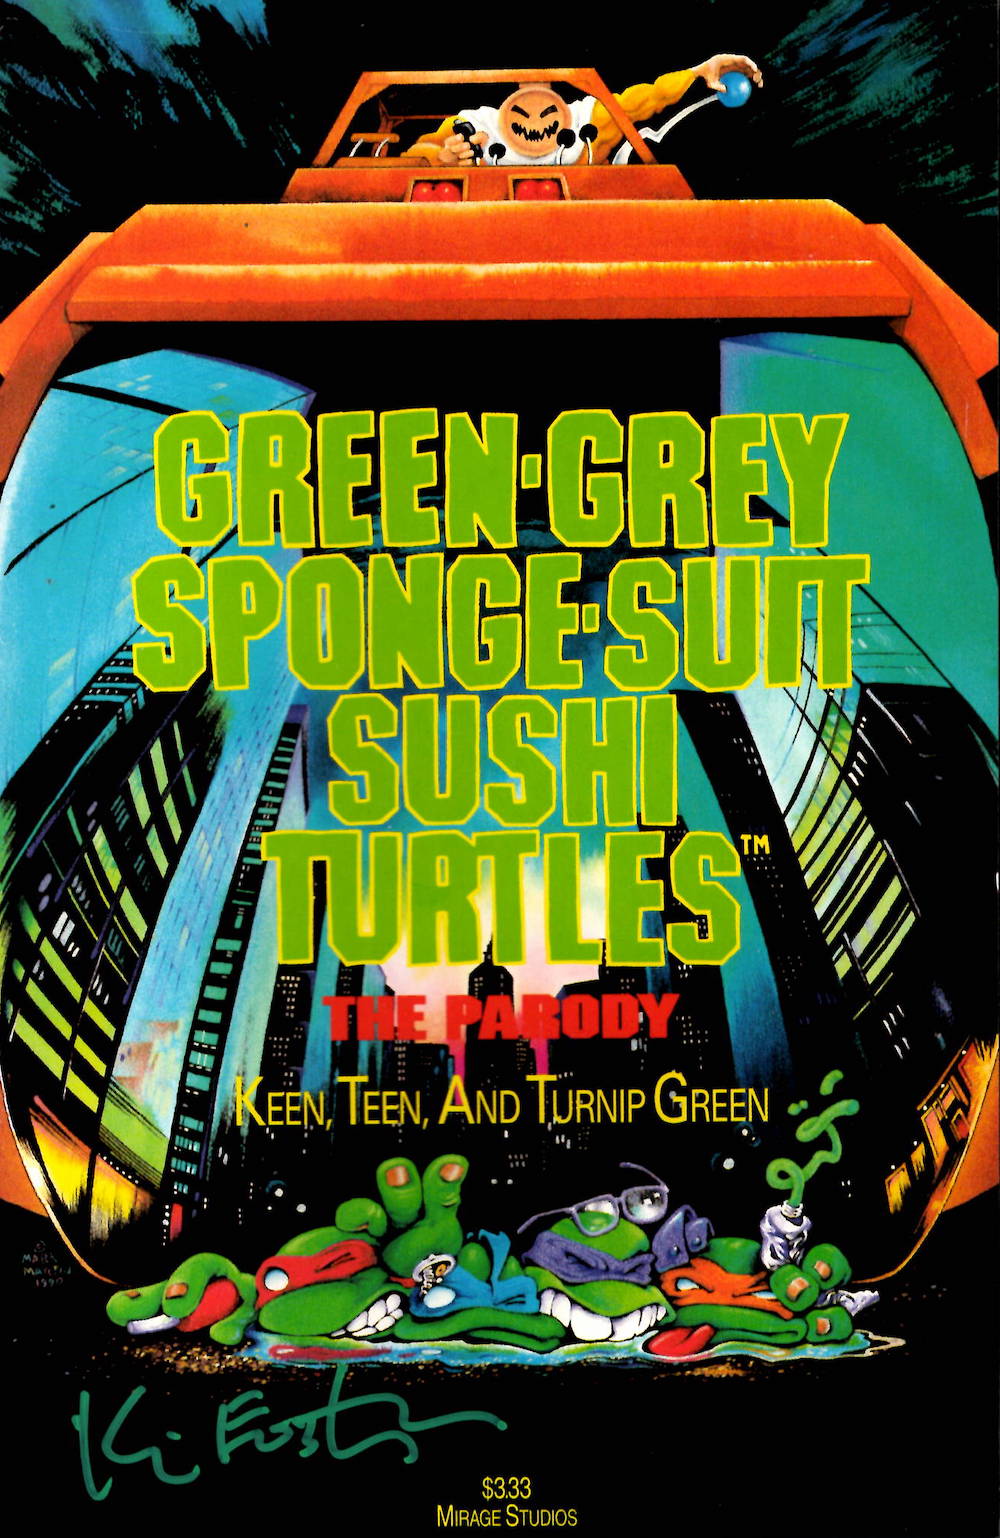 Green-Grey Sponge-Suit Sushi Turtles, Kevin Eastman Signed